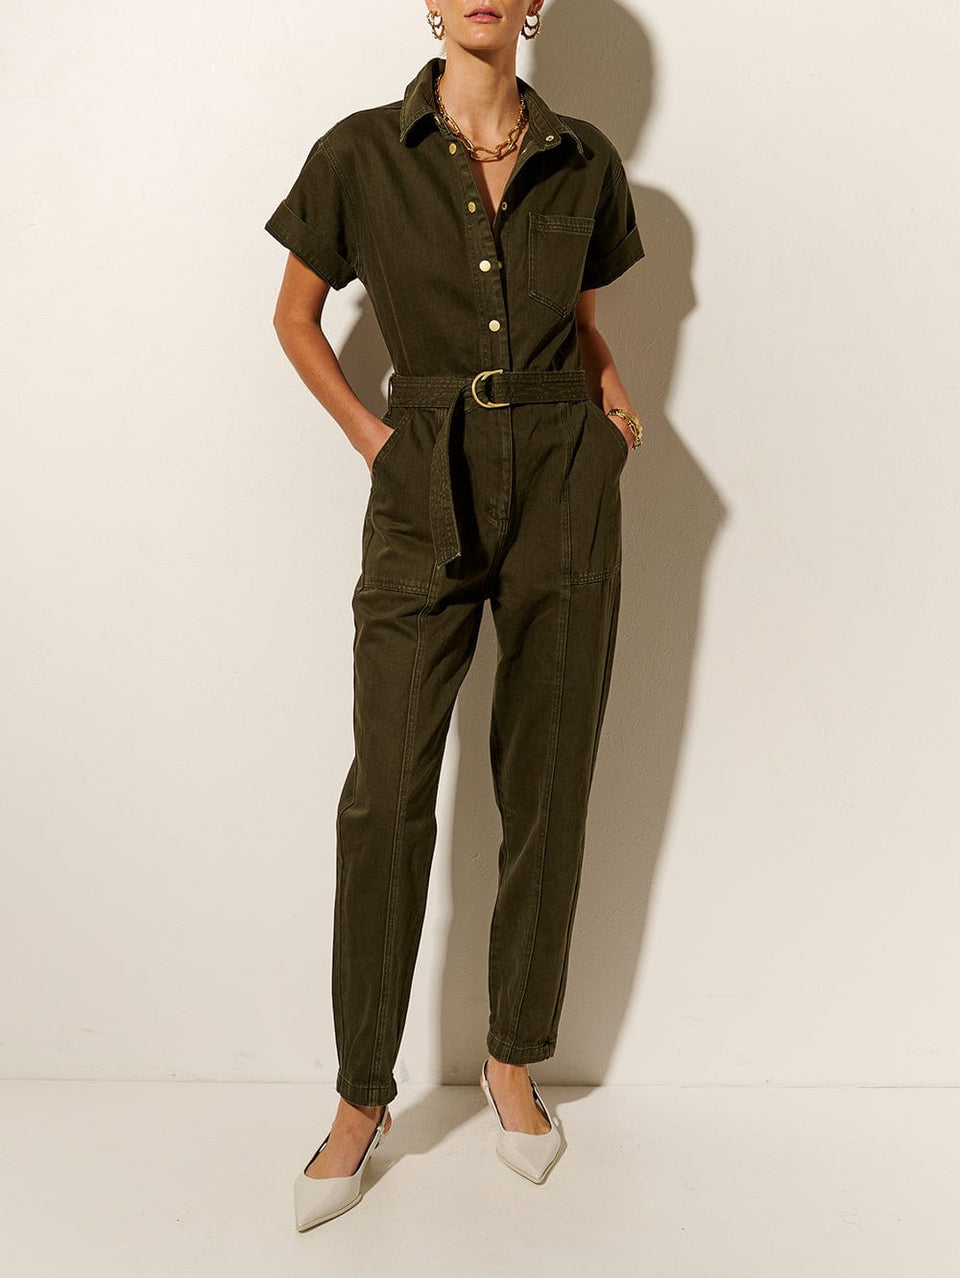 KIVARI Tahlia Boilersuit | Model wears Dark Khaki Boilersuit